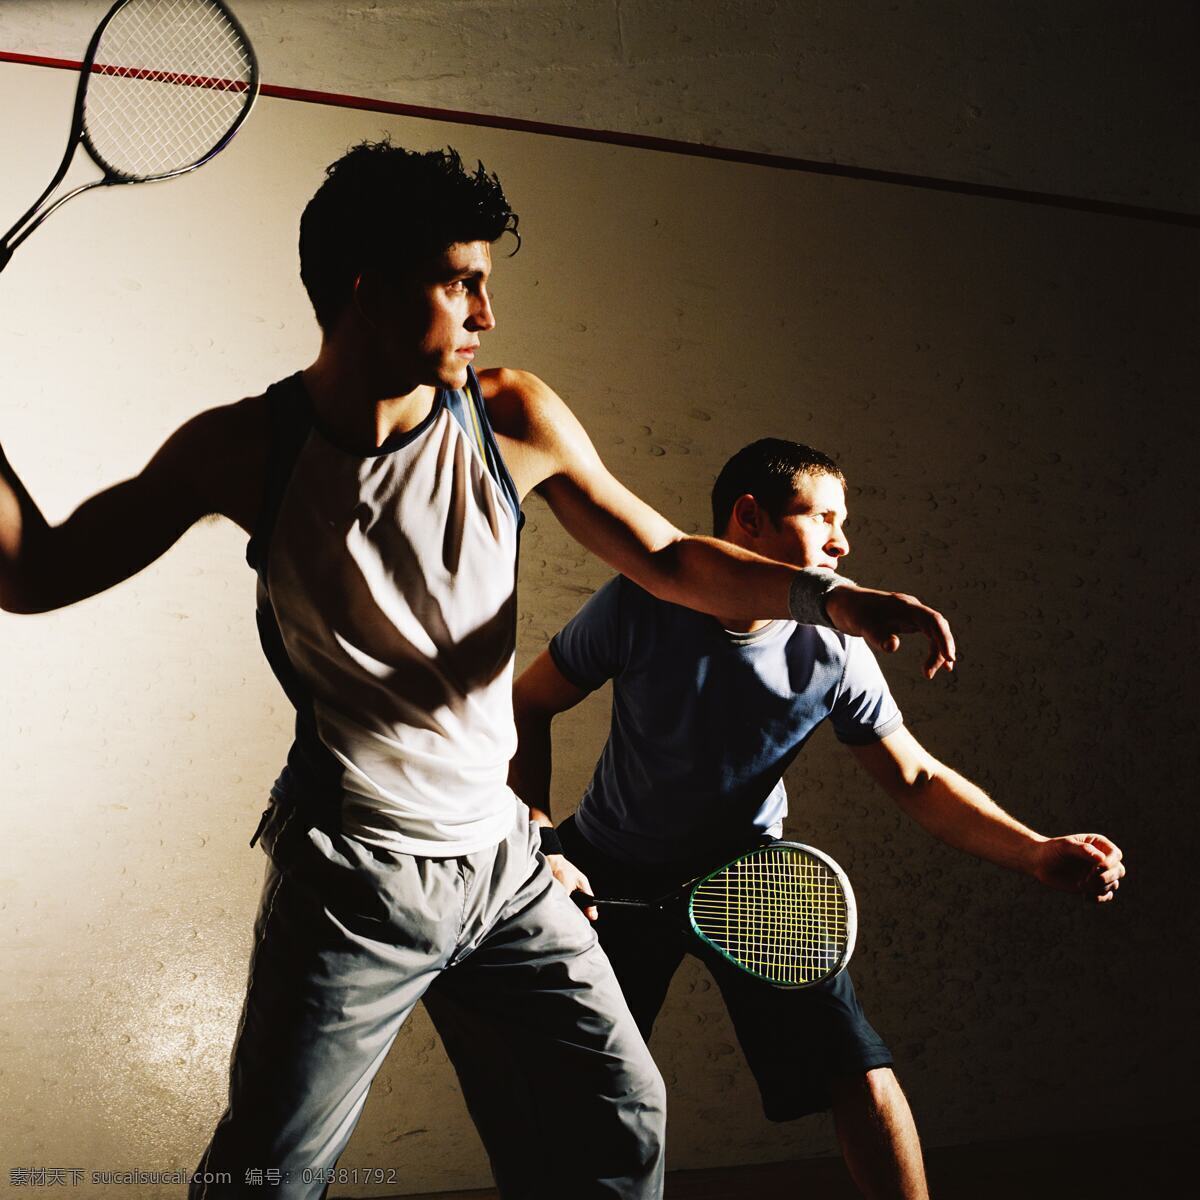 双打 网球 运动 打网球 外国男人 健身 男性男人 男人 拿着 网球拍 队员 队友 体育运动 生活百科